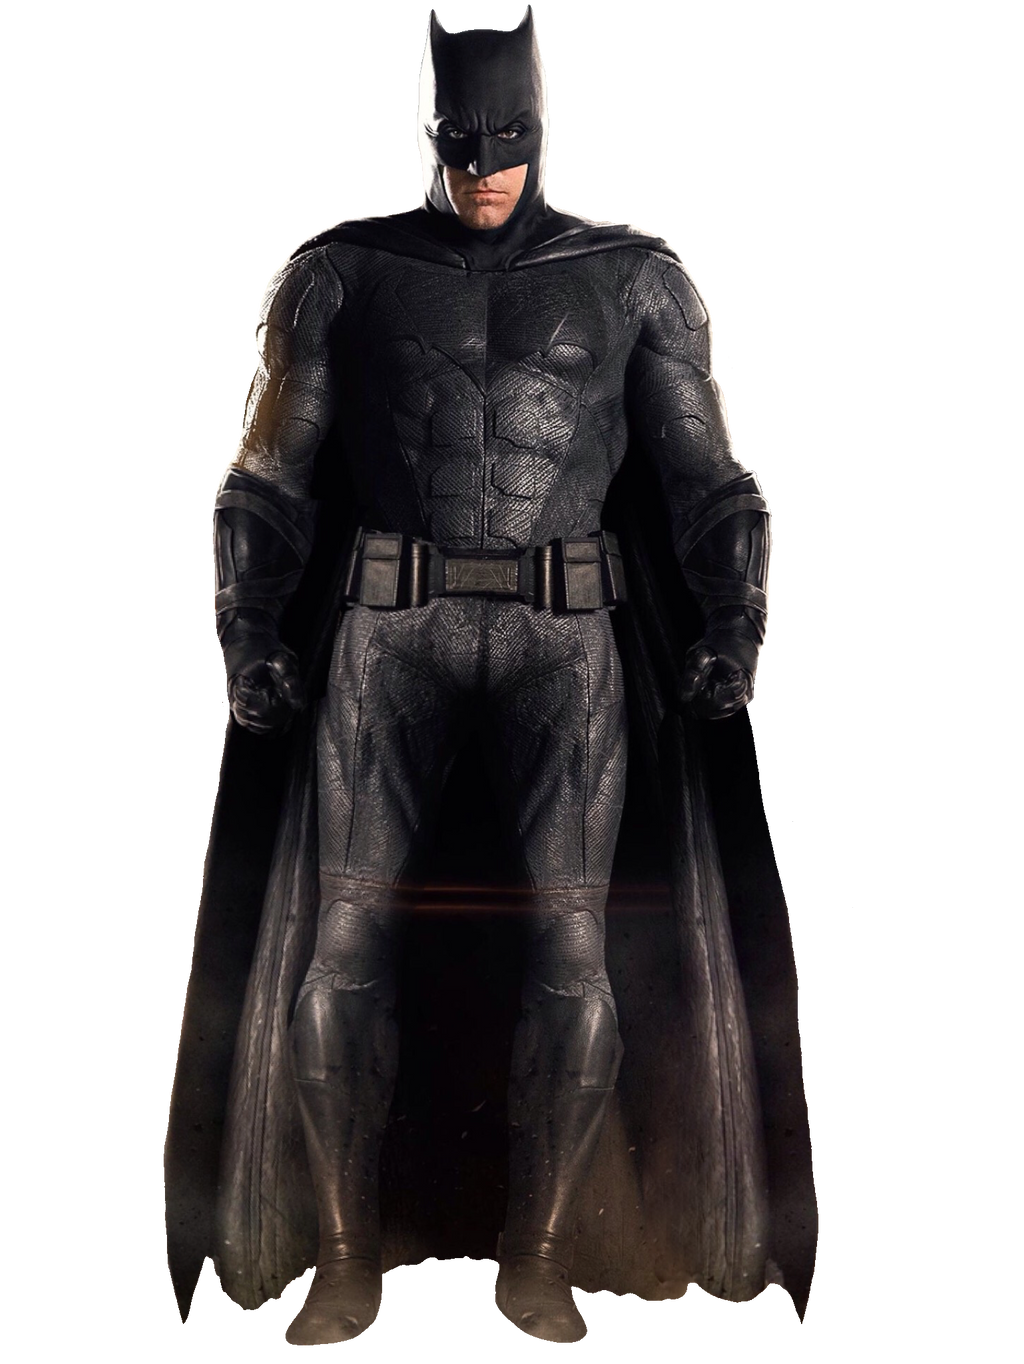 Justice League Batman PNG Image Transparent Background